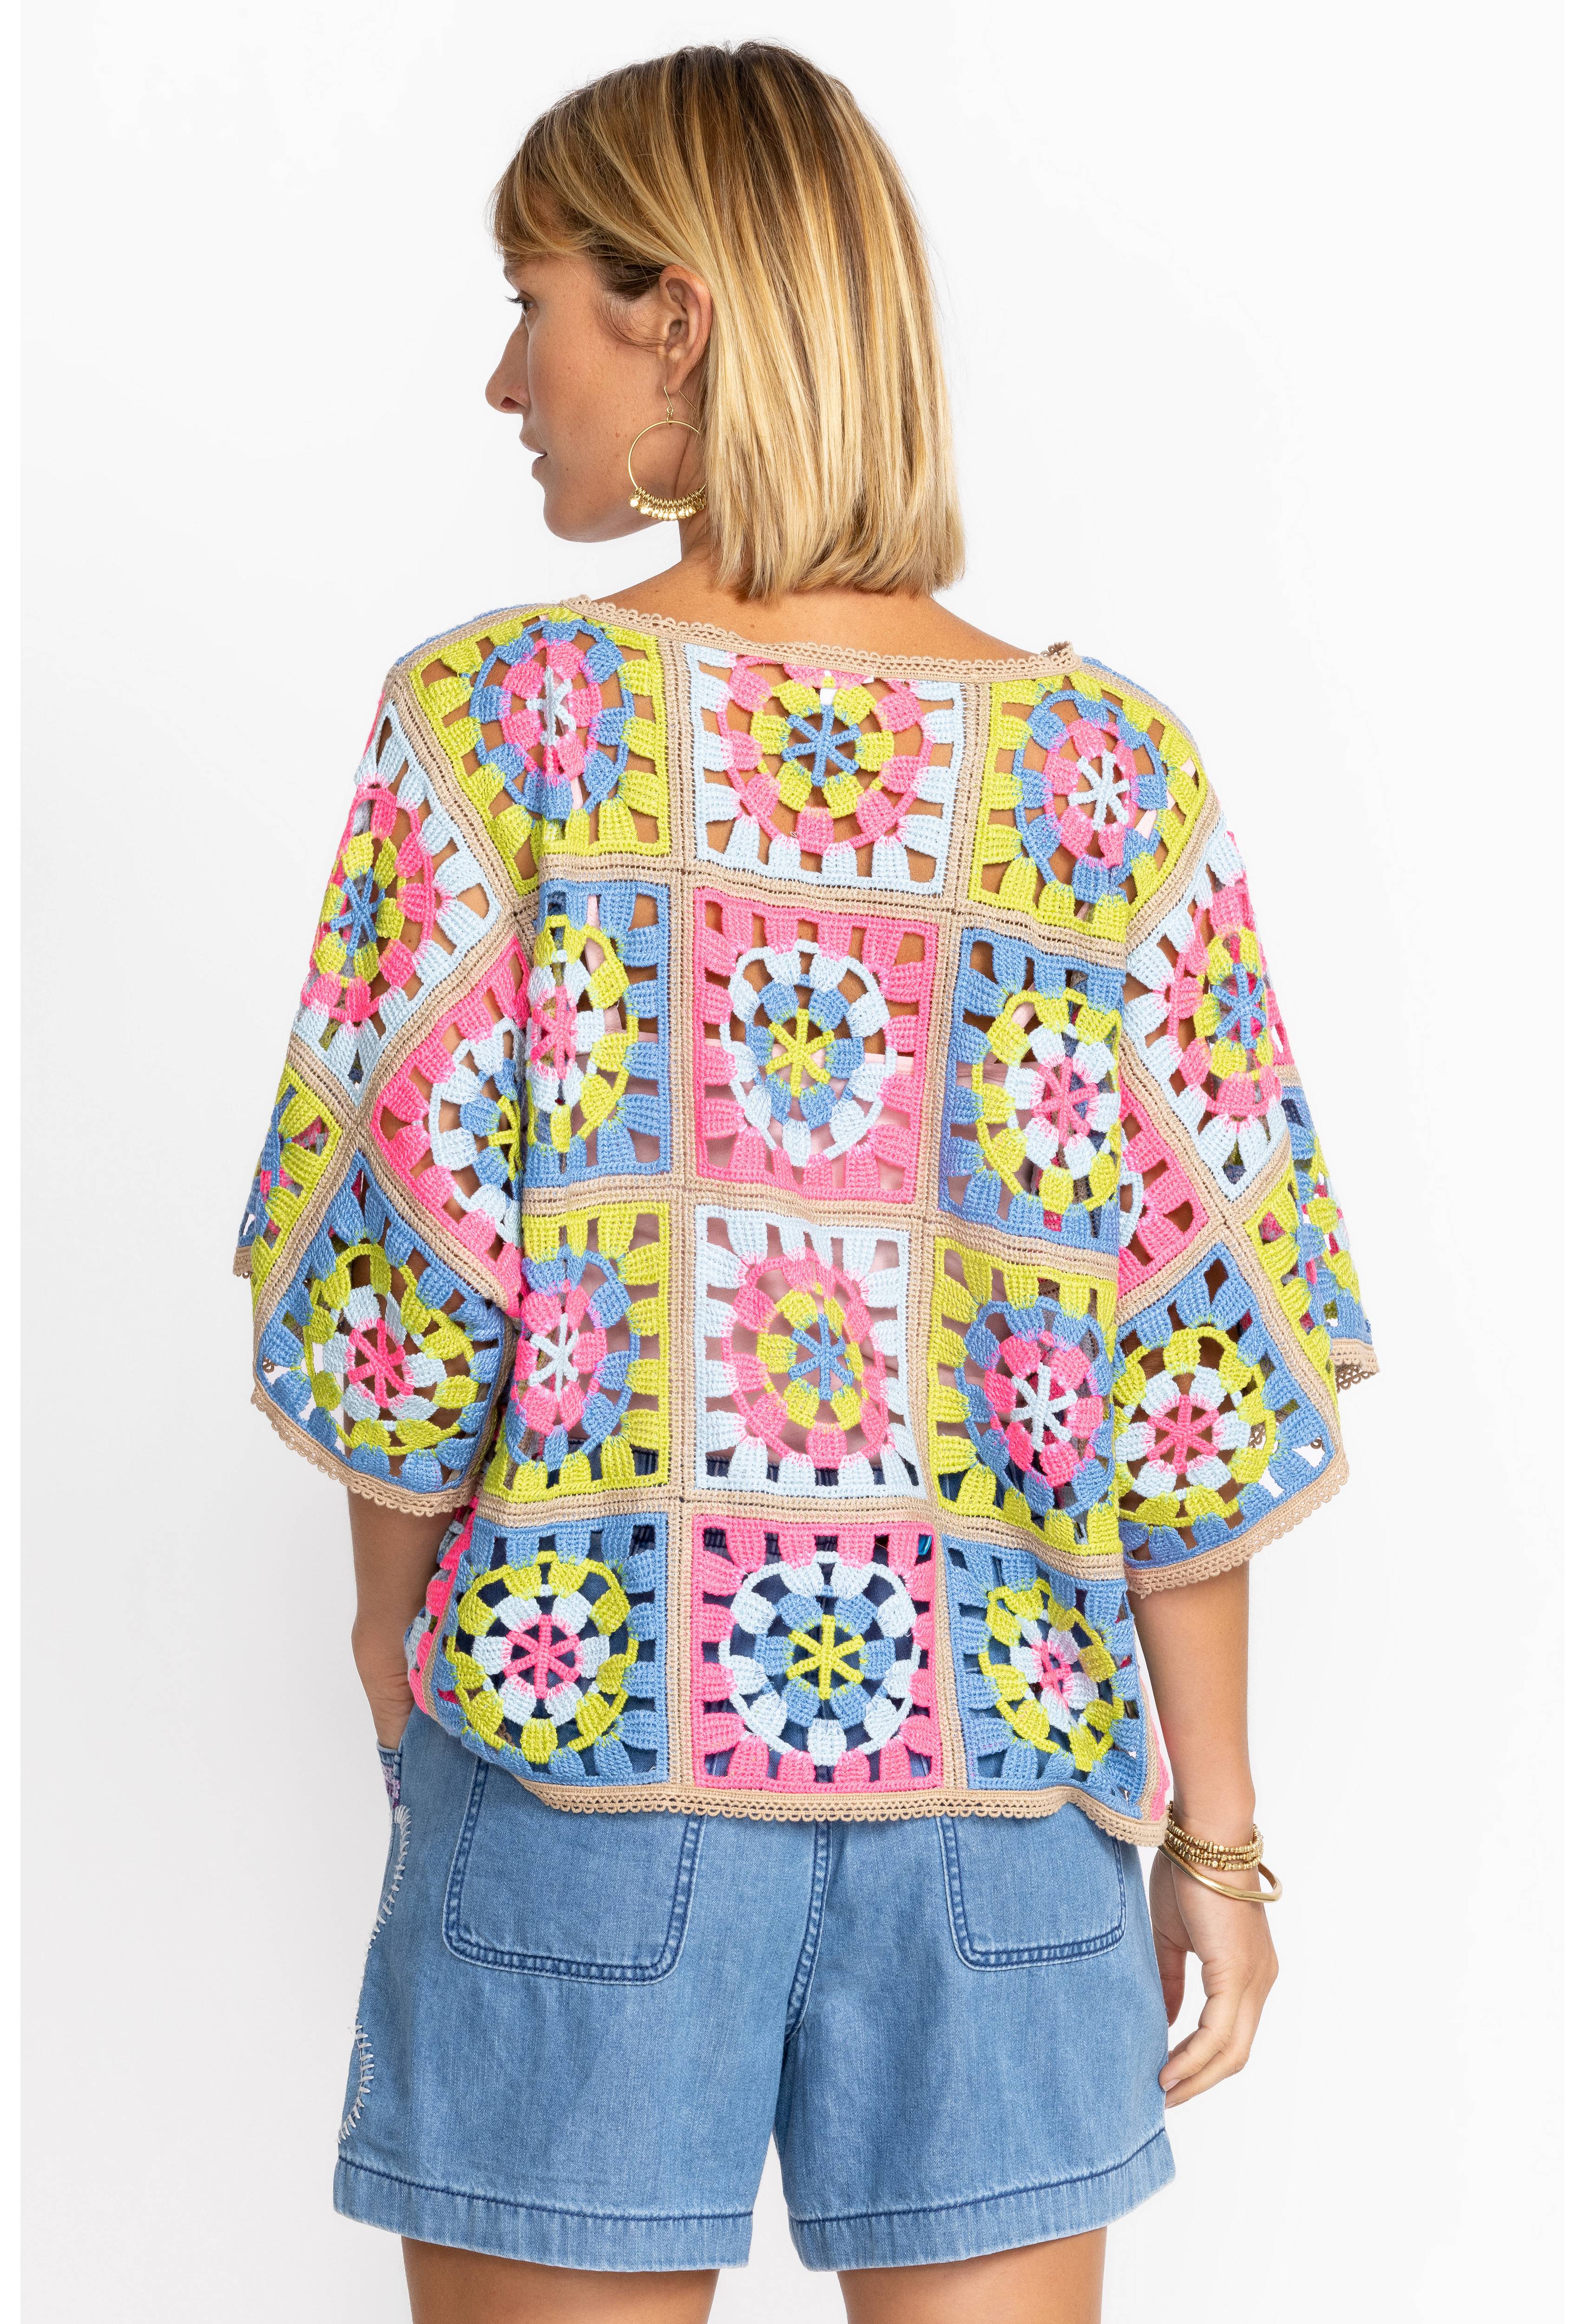 Florabelle Crochet Top, , large image number 4